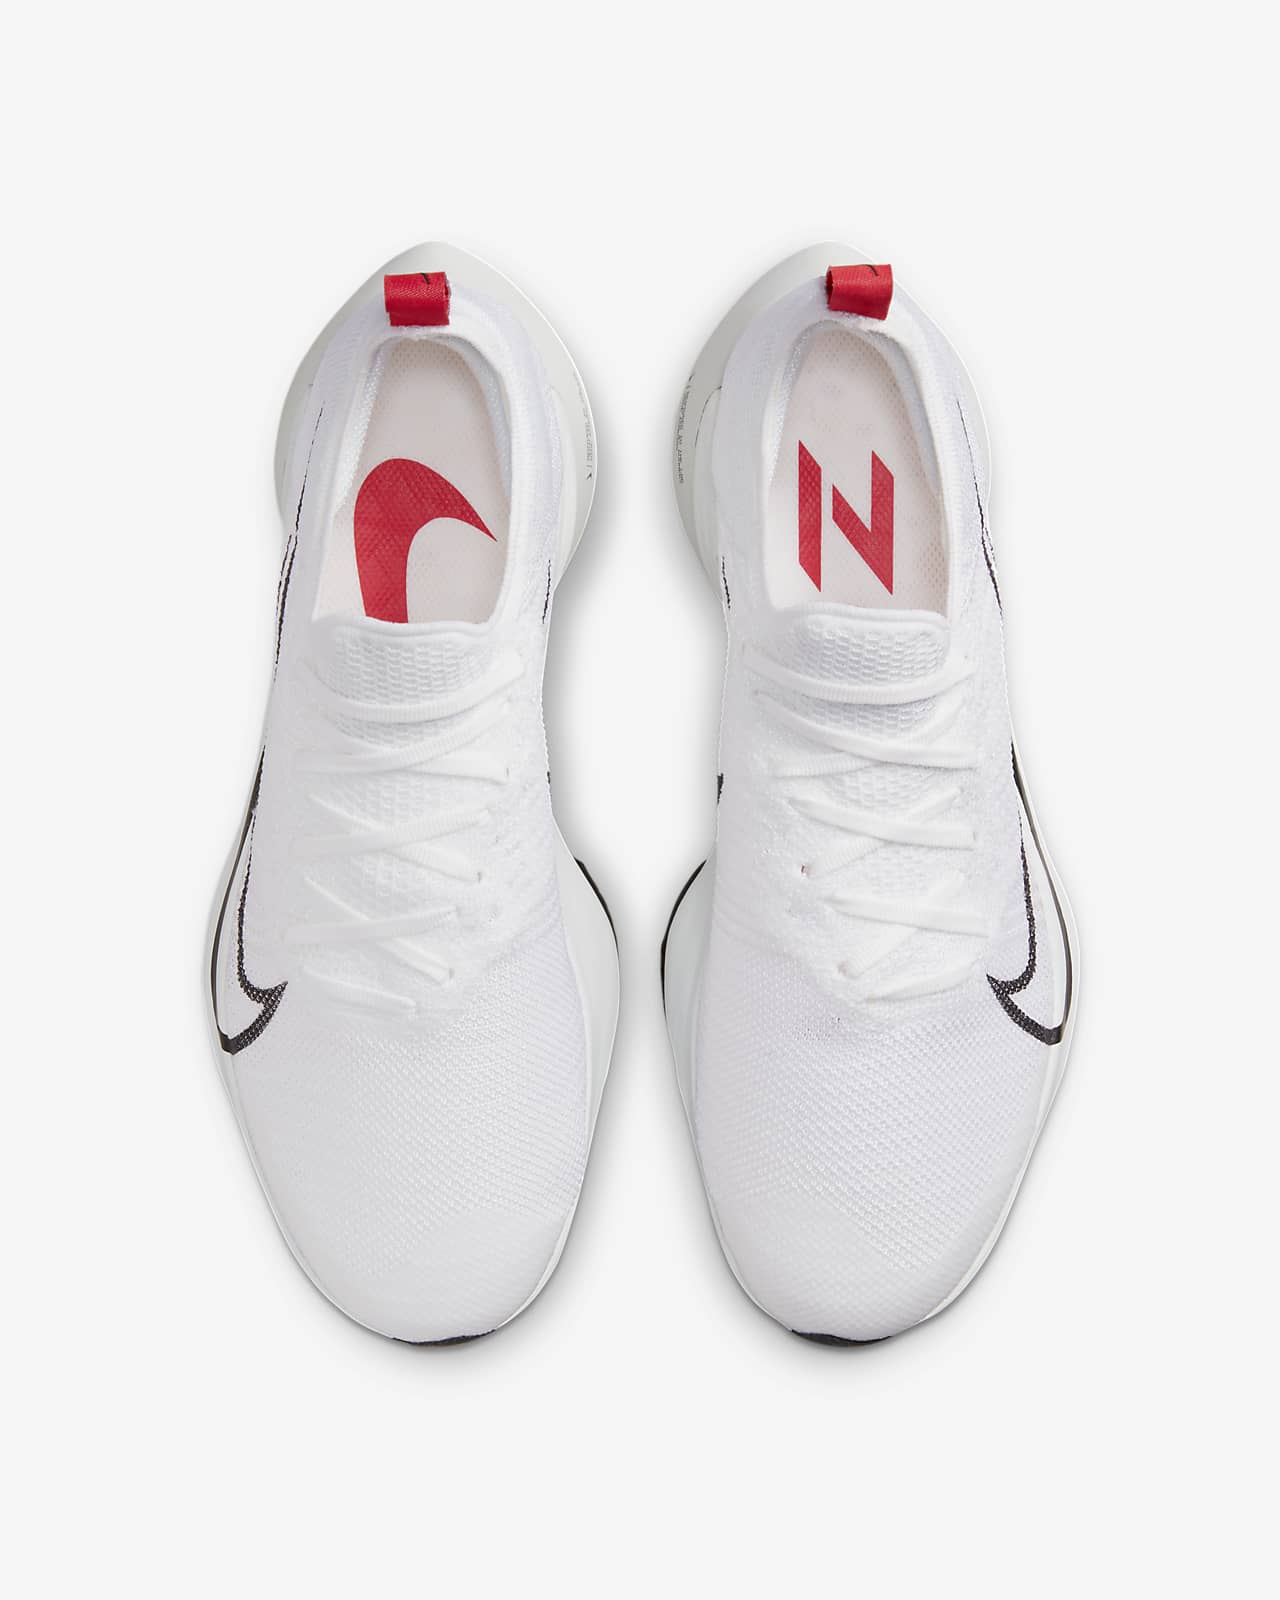 Nike Womens Free Flyknit 3.0 718420-600 Orange Running Shoes Sneakers Size  8.5 | eBay